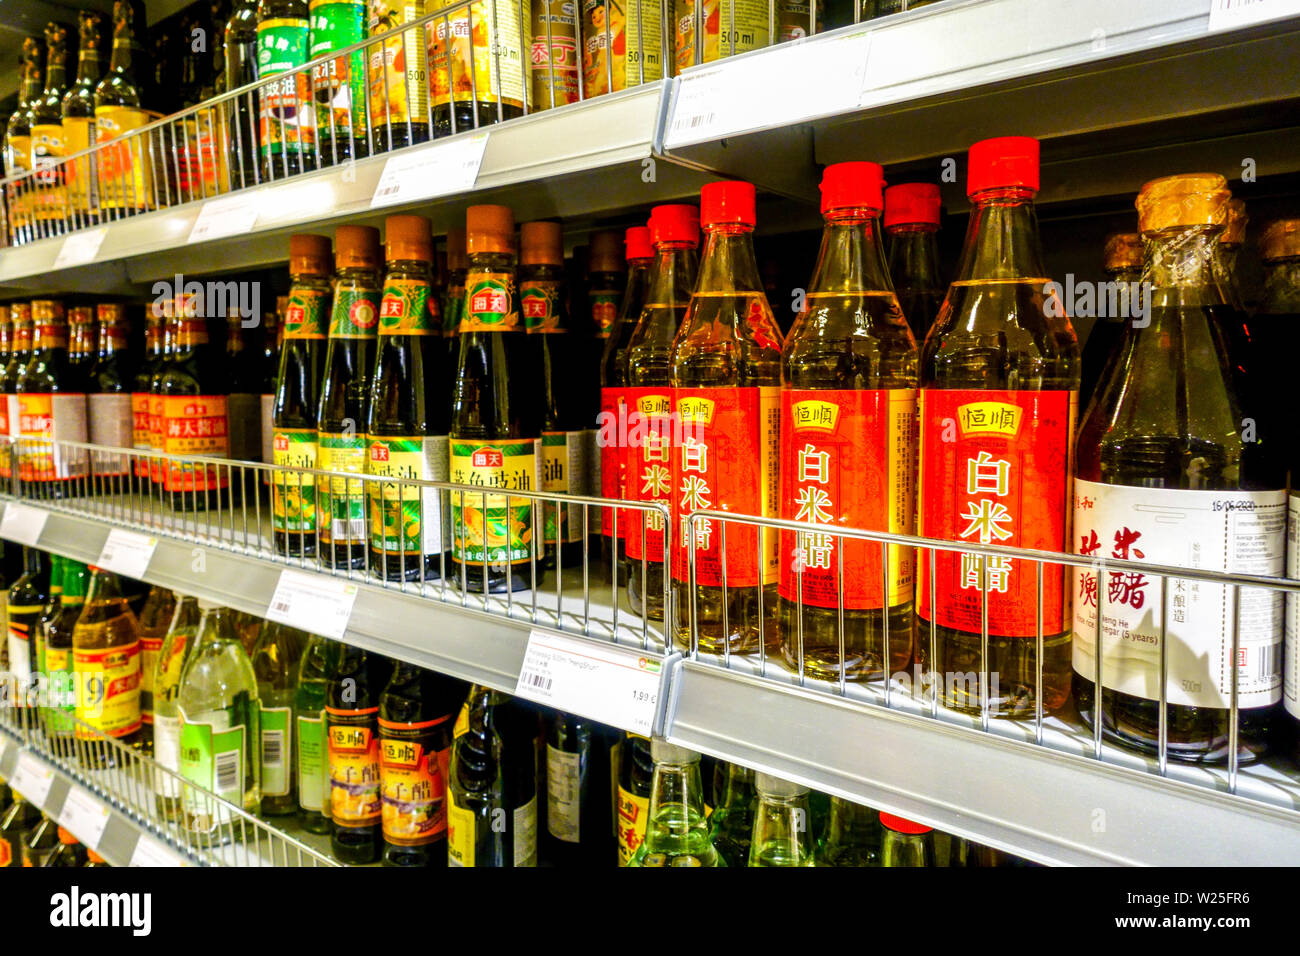 Seuls les produits asiatiques dans les sauces de supermarché, sauce soja, Dresde, Allemagne rayons de supermarché, étagère Banque D'Images